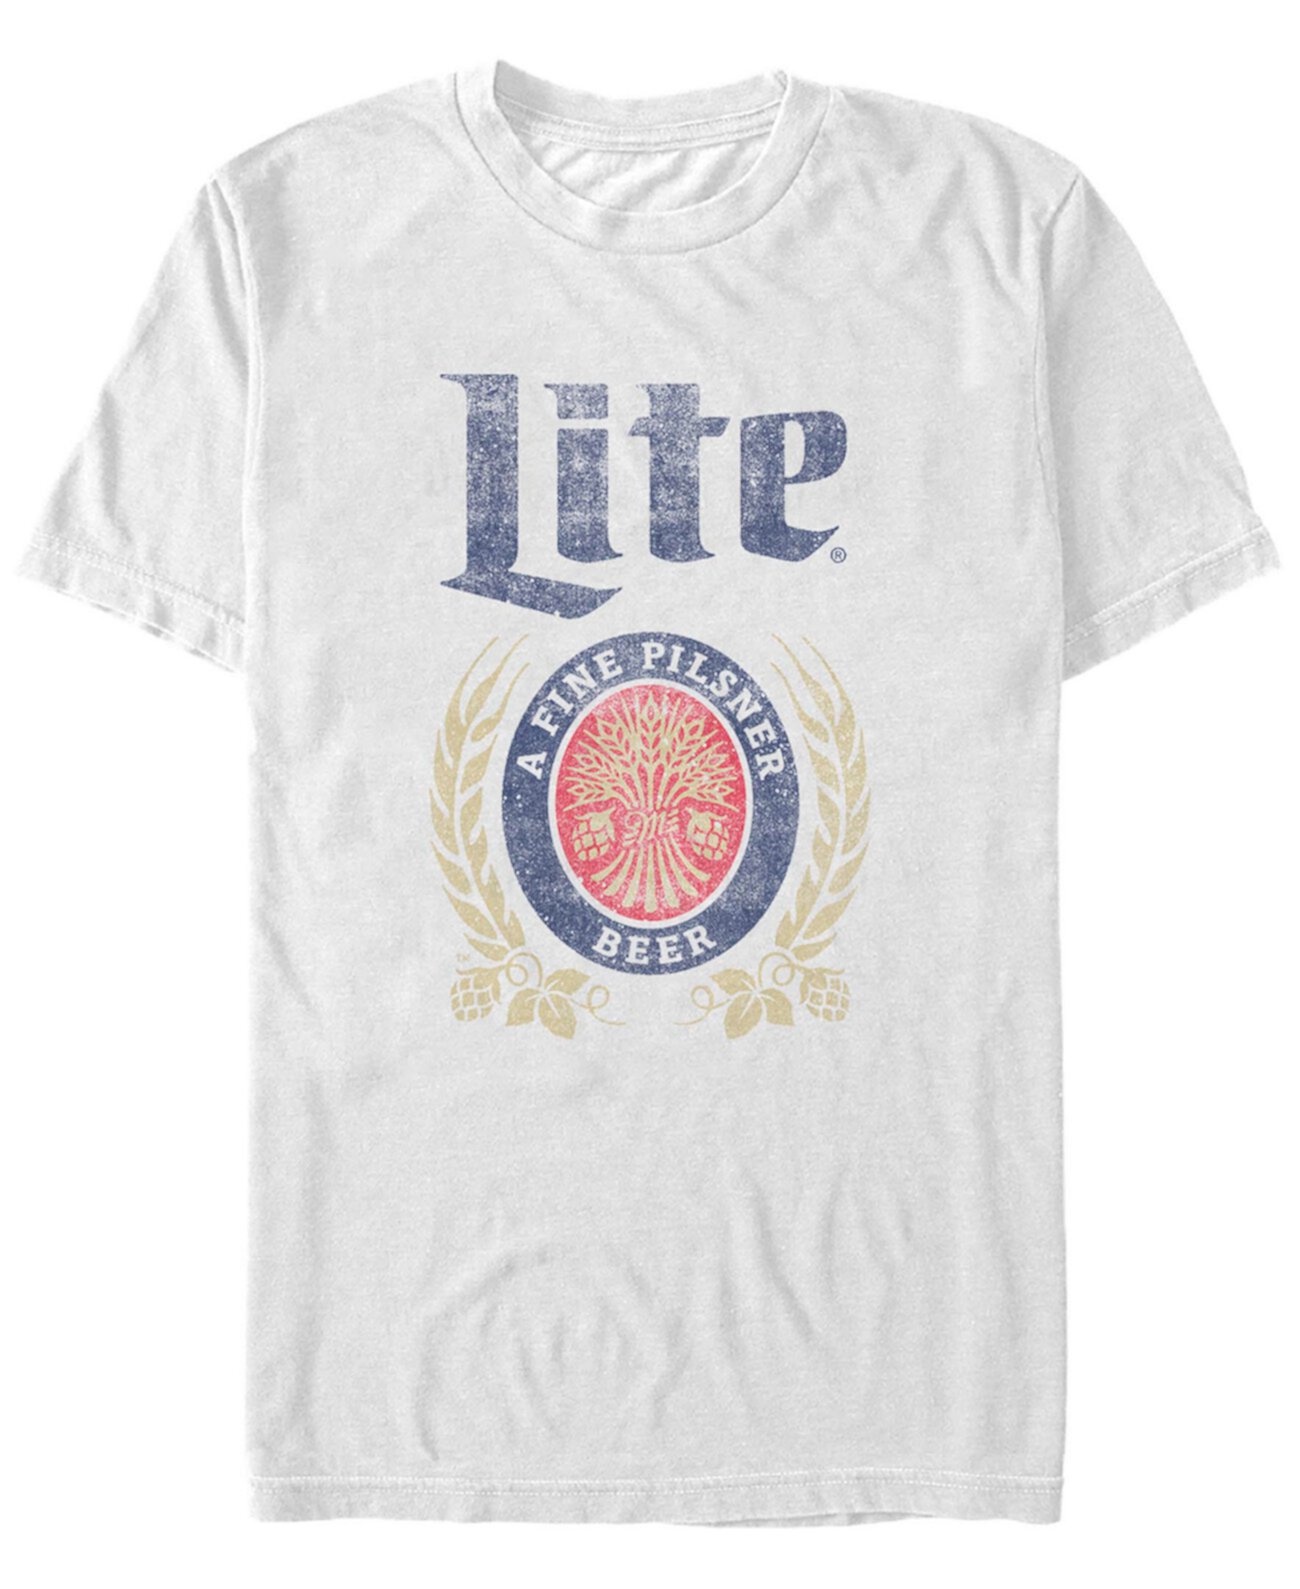 Мужская футболка Miller Lite с короткими рукавами и логотипом Pilsner FIFTH SUN